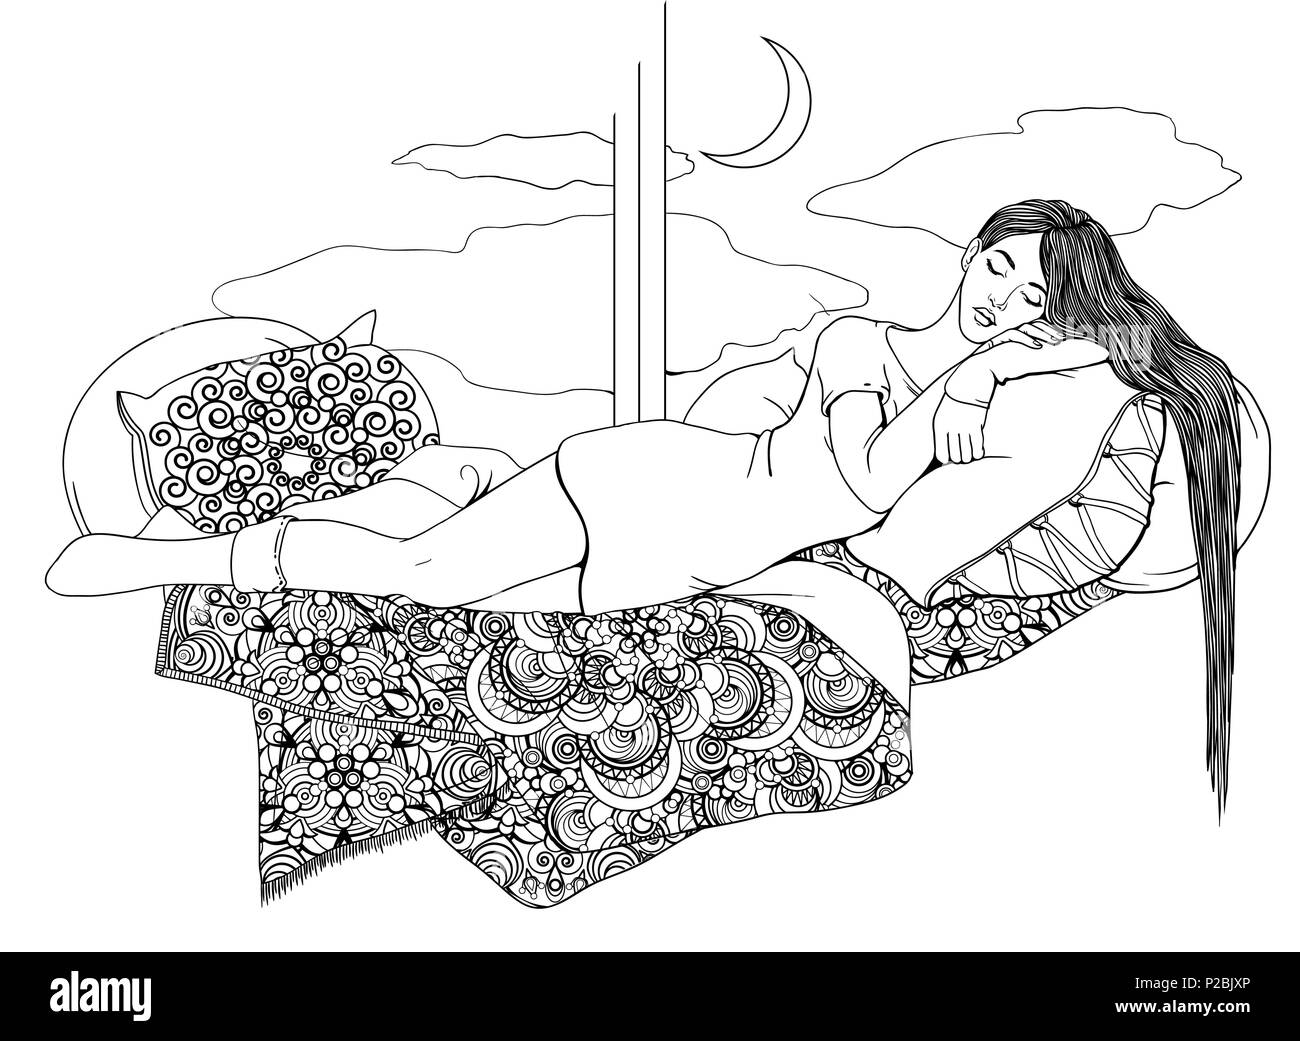 Ein junges Mädchen mit langen Haaren schläft auf gemusterten Bettdecken und Kissen Stock Vektor